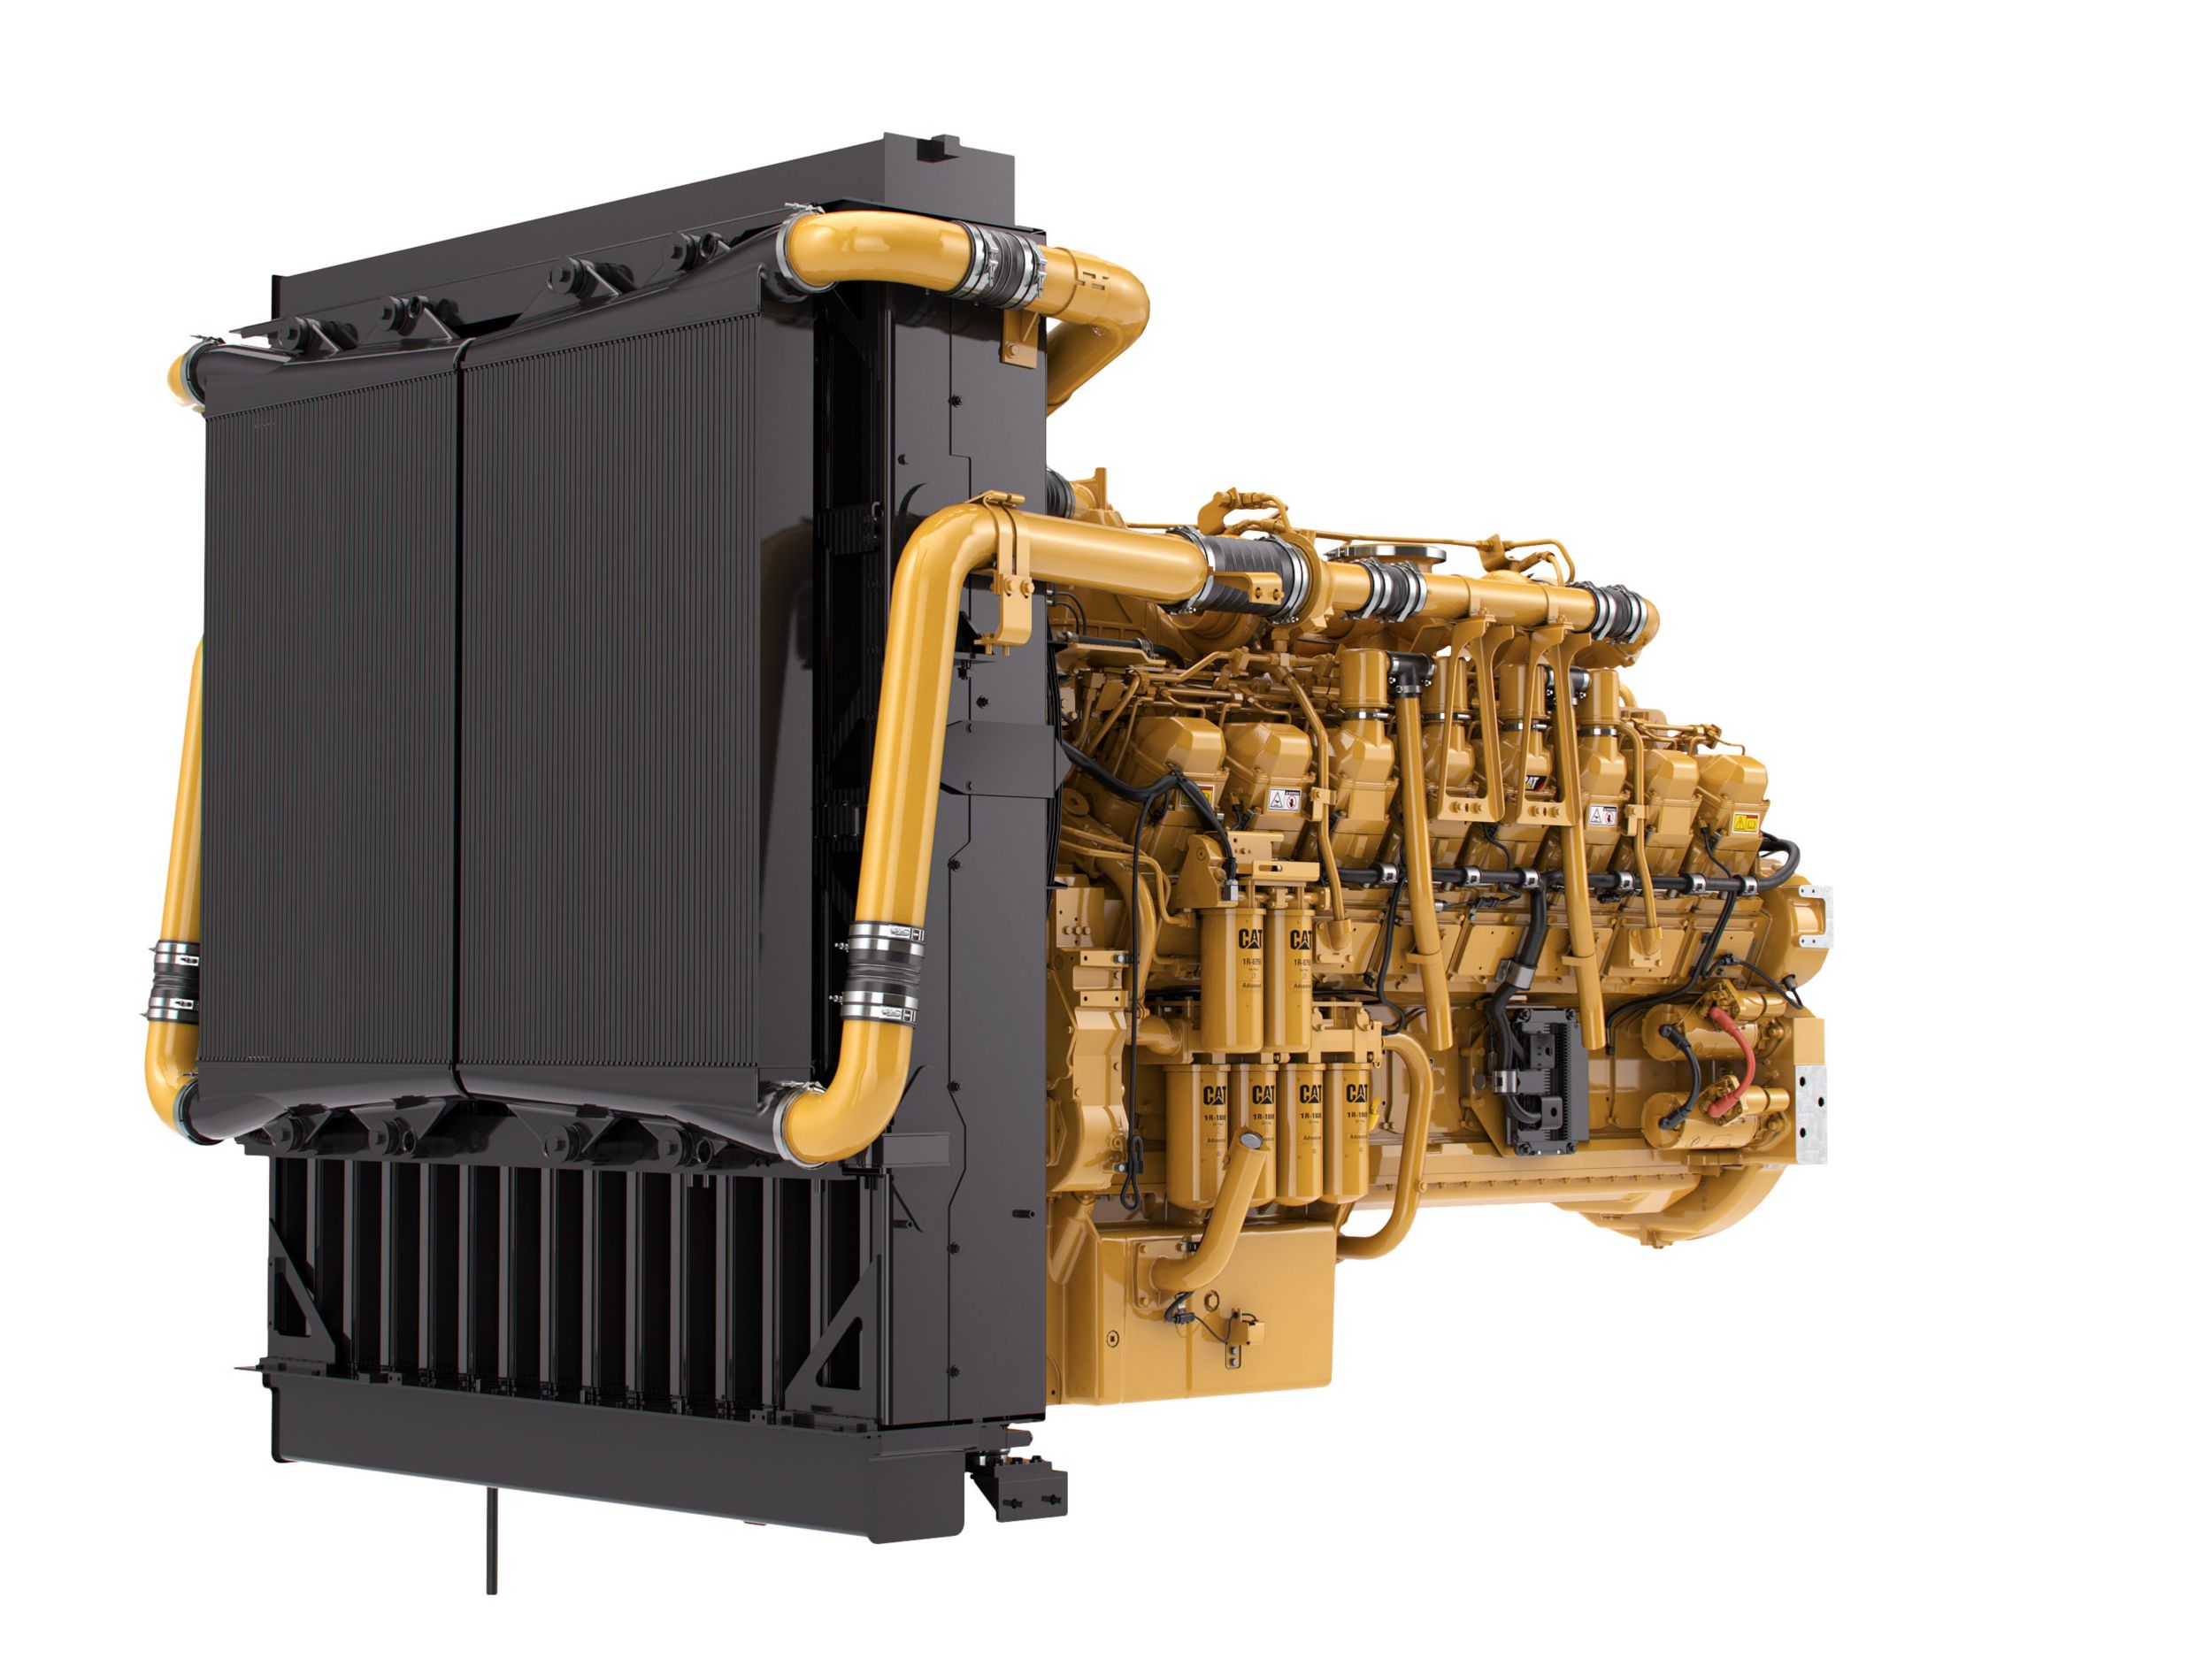 Motori diesel 3516 LRC - Aree non regolamentate o con regolamentazione minima